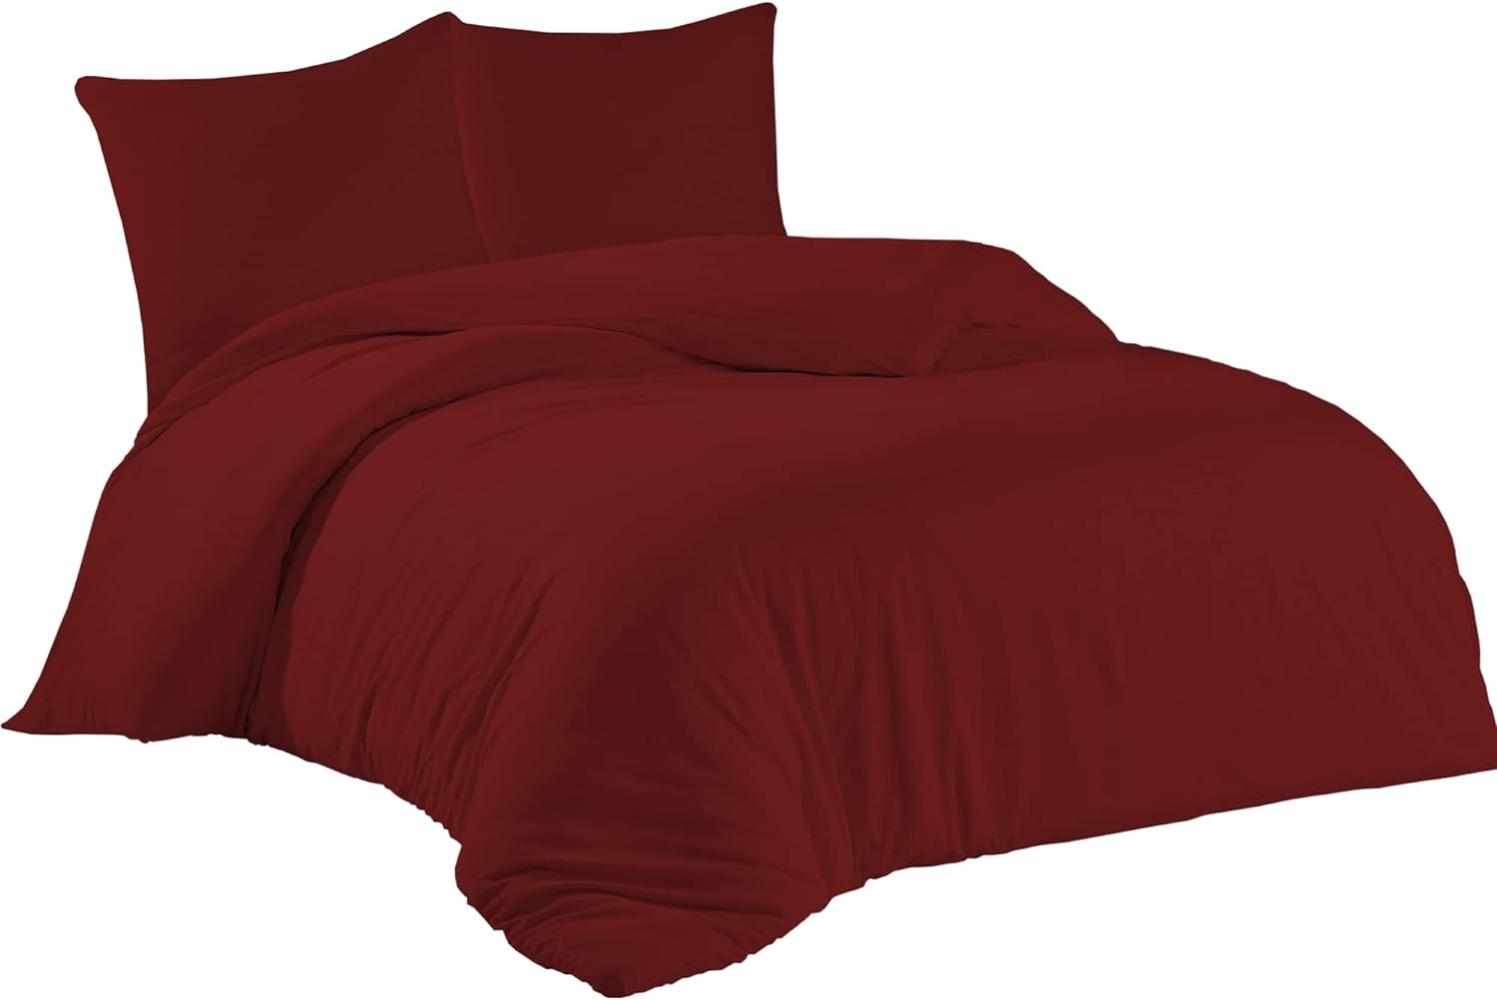 livessa Bettwäsche 200x220 3teilig Baumwolle - Bettwäsche mit Reißverschluss: Bettbezug 200x220 cm + 2er Set Kissenbezug 80x80 cm, Oeko-Tex Zertifiziert, aus%100 Baumwolle Jersey (140 g/qm) Bild 1